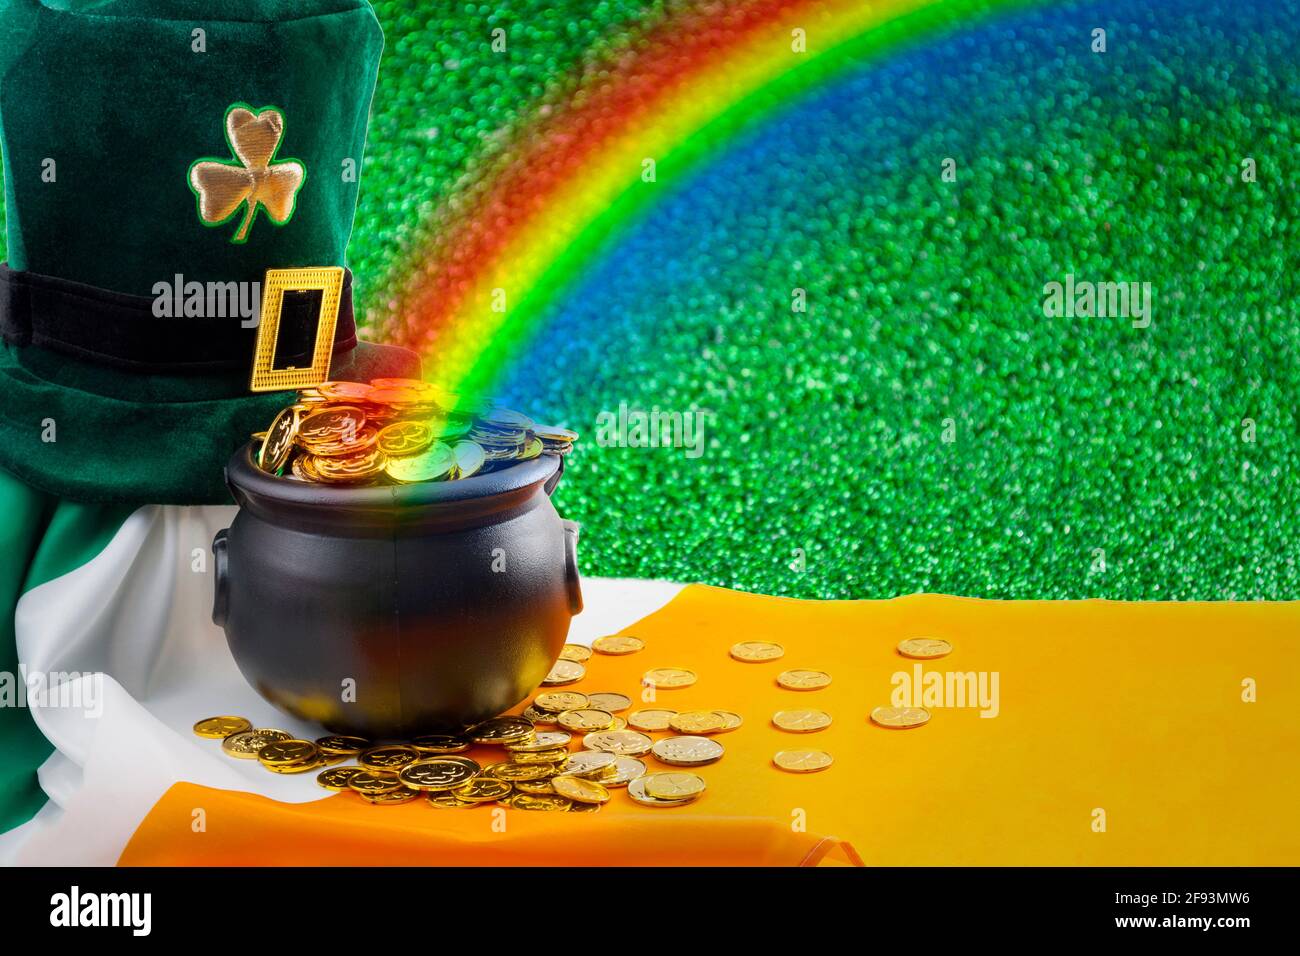 Meme de marzo, día nacional de Irlanda y Happy St Patrick concepto con verde lefrechaun sombrero con shamrock, olla de oro al final del arco iris, irlandés Foto de stock